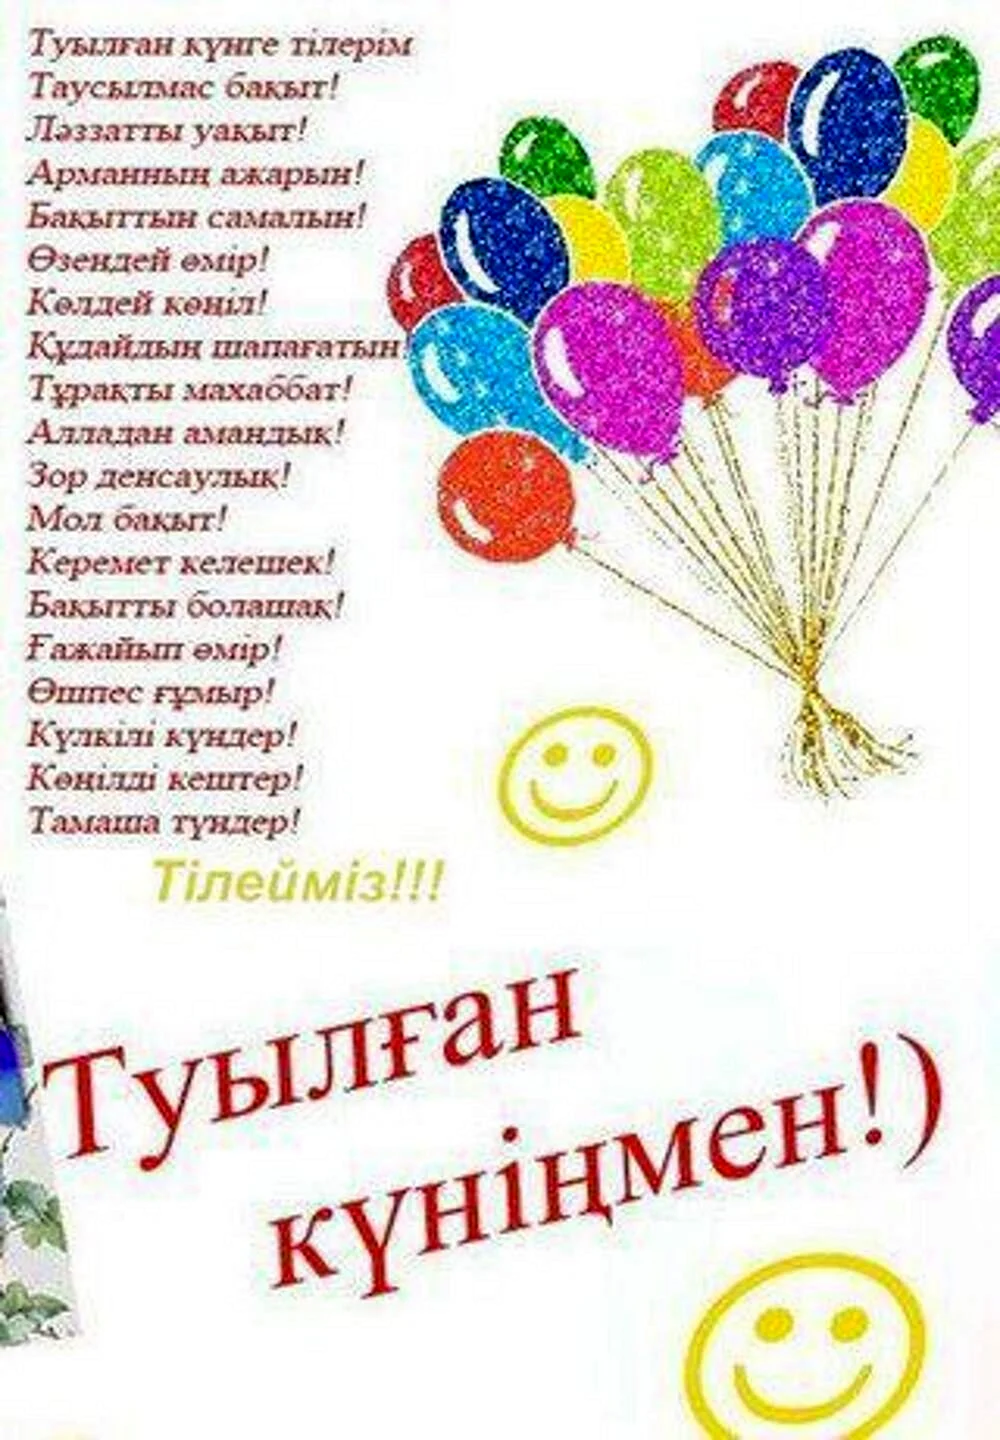 Казахские поздравления с днем рождения